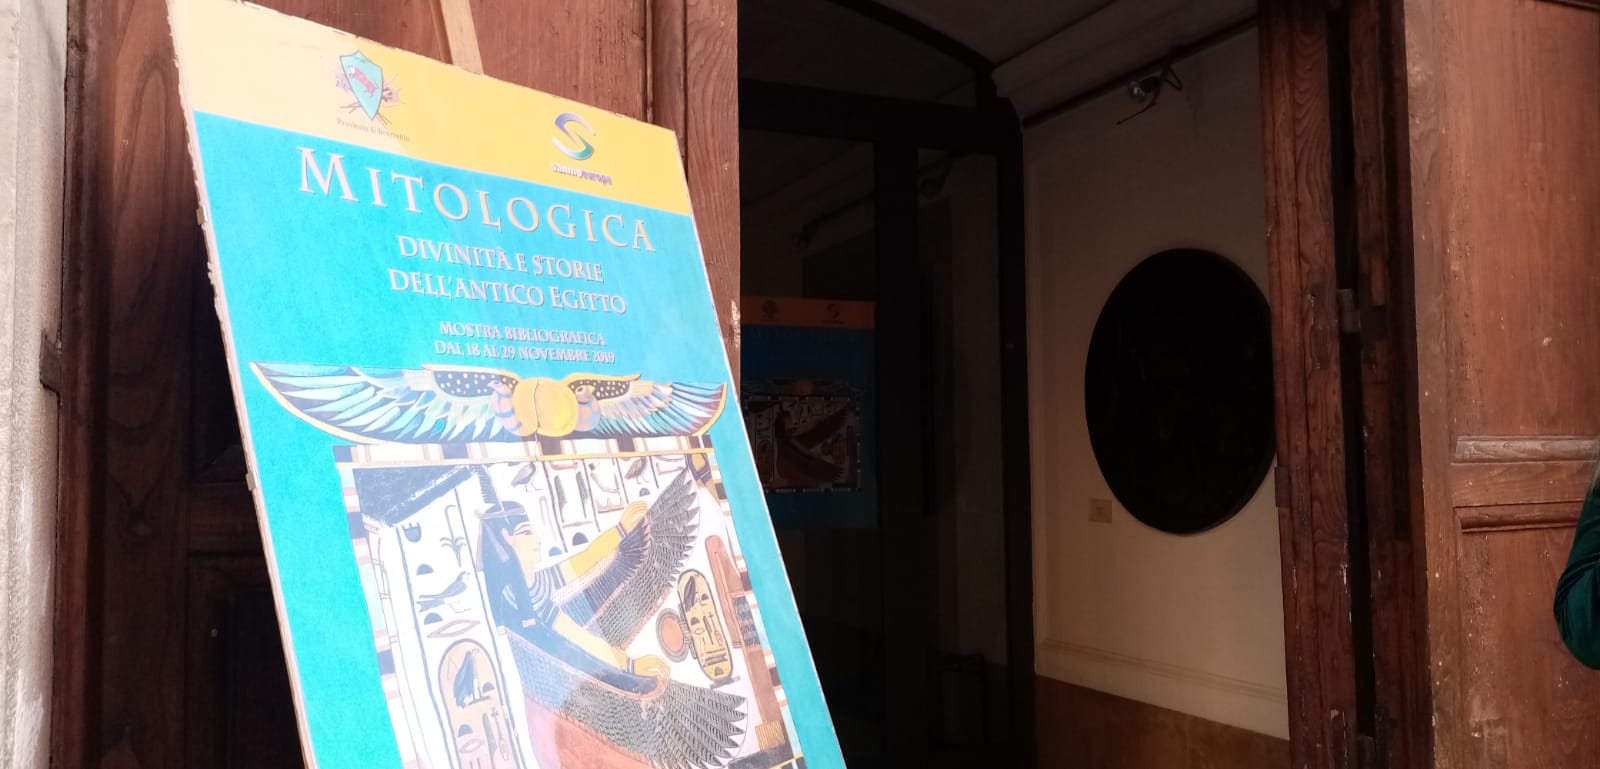 Benevento| Prorogata la mostra bibliografica “Mitologica-divinità e storie dell’Antico Egitto”